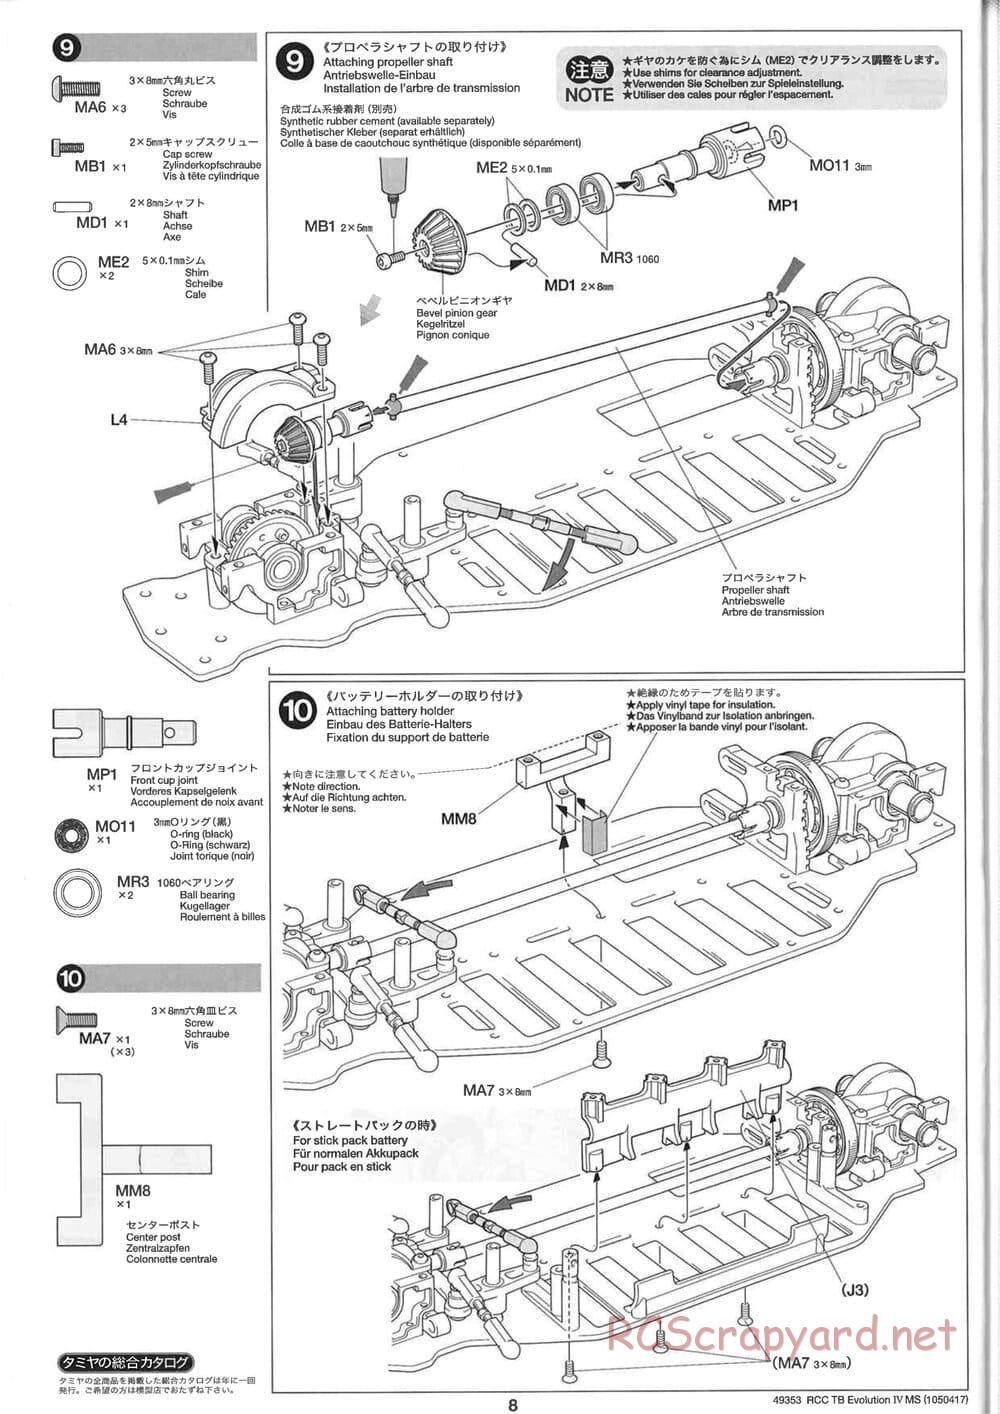 Tamiya - TB Evolution IV MS Chassis - Manual - Page 8